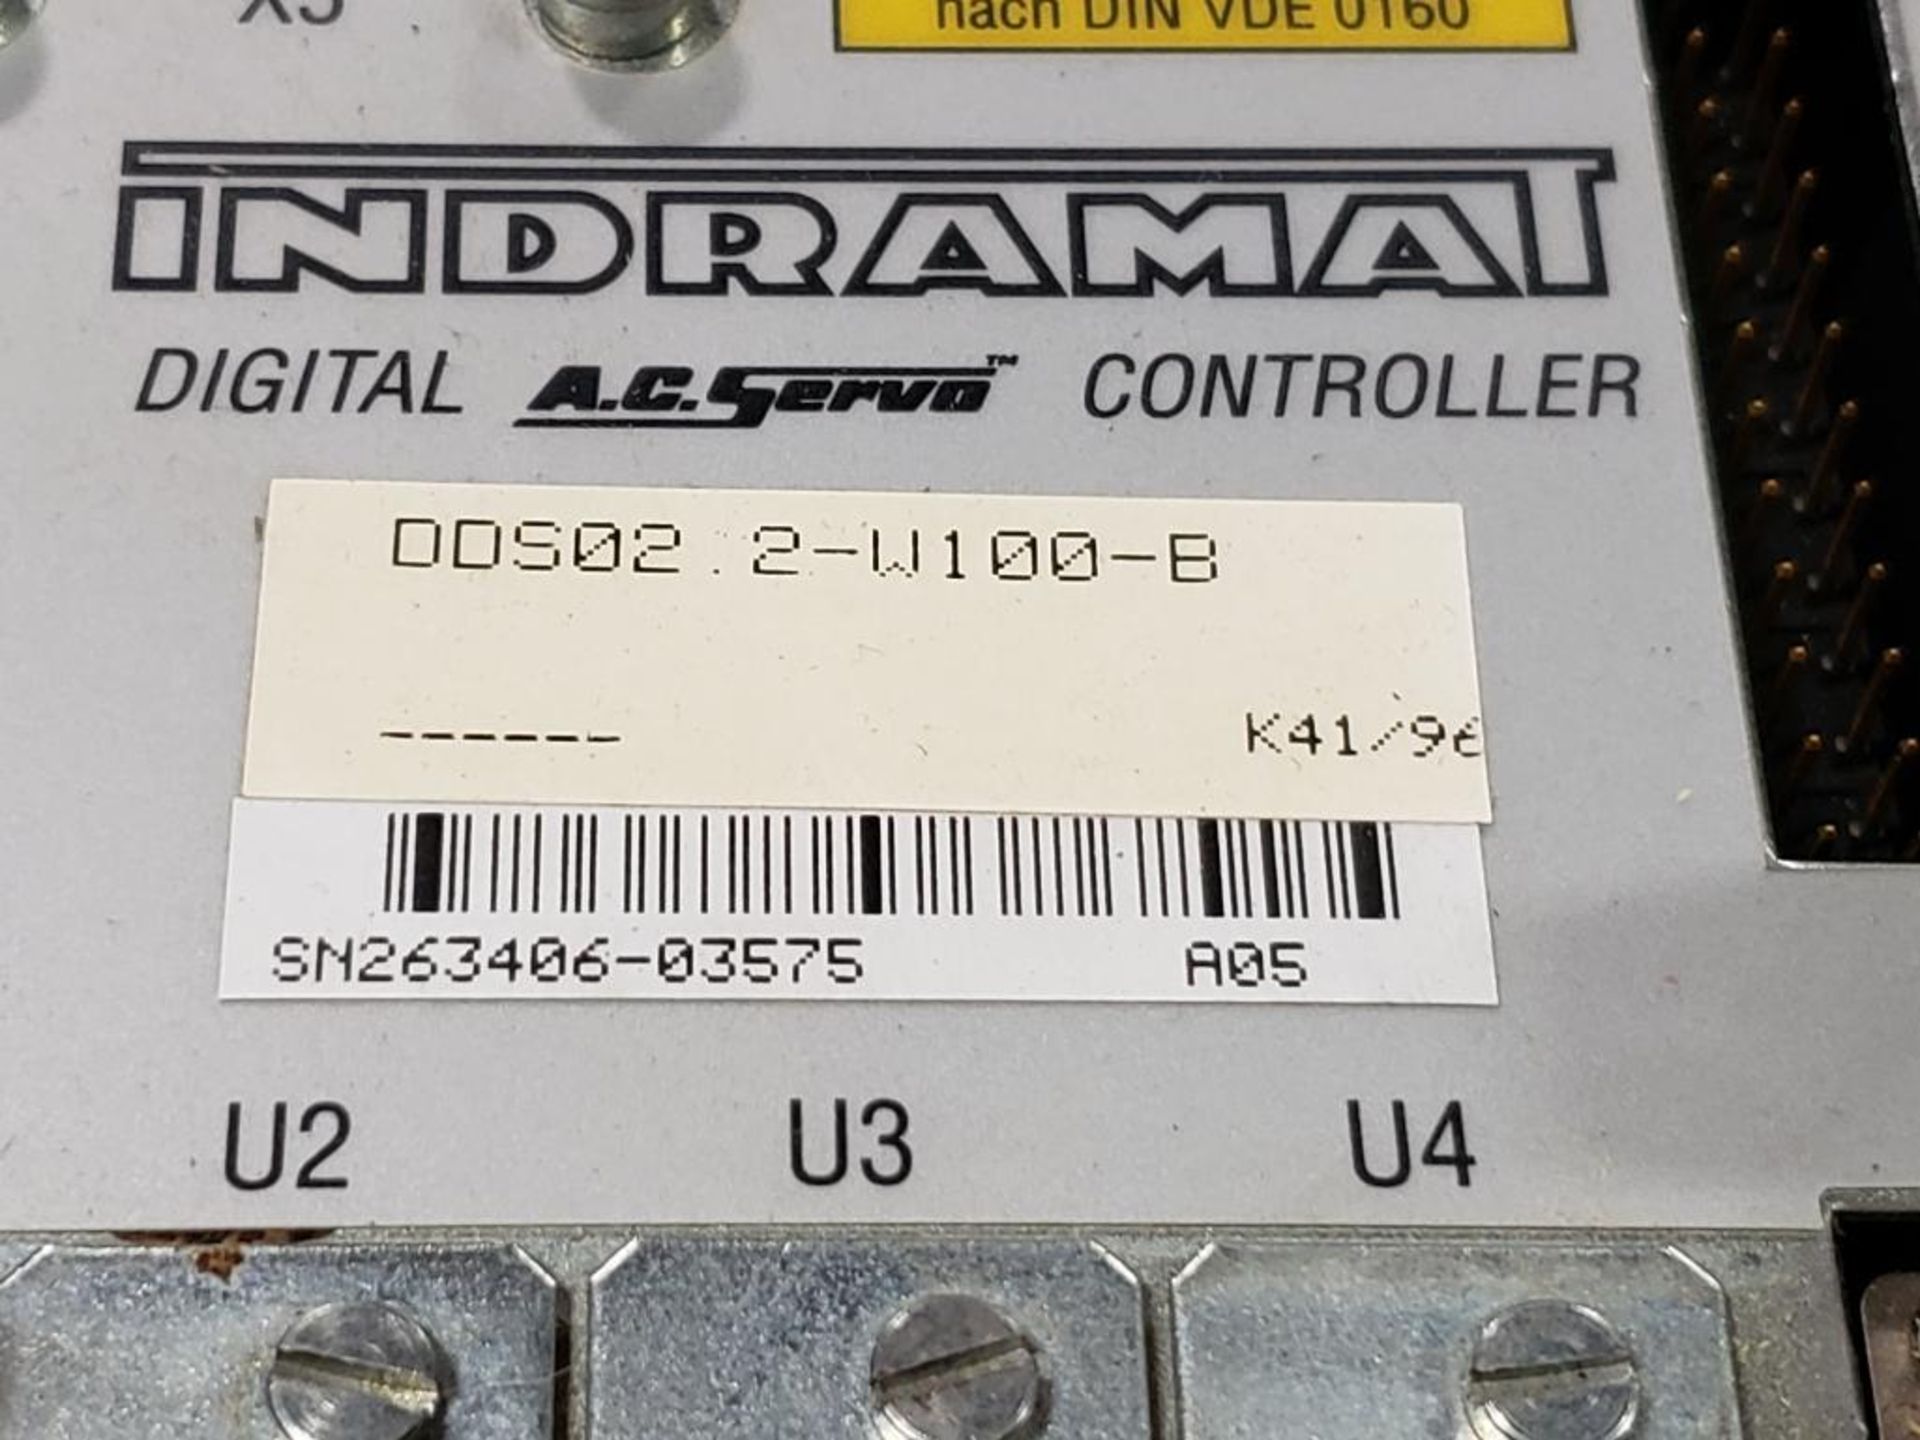 Indramat DDS02.2-W100-B digital AC servo controller. W/ FWC-DSM02.3-ELS-04V36-MS firmware module. - Image 5 of 7